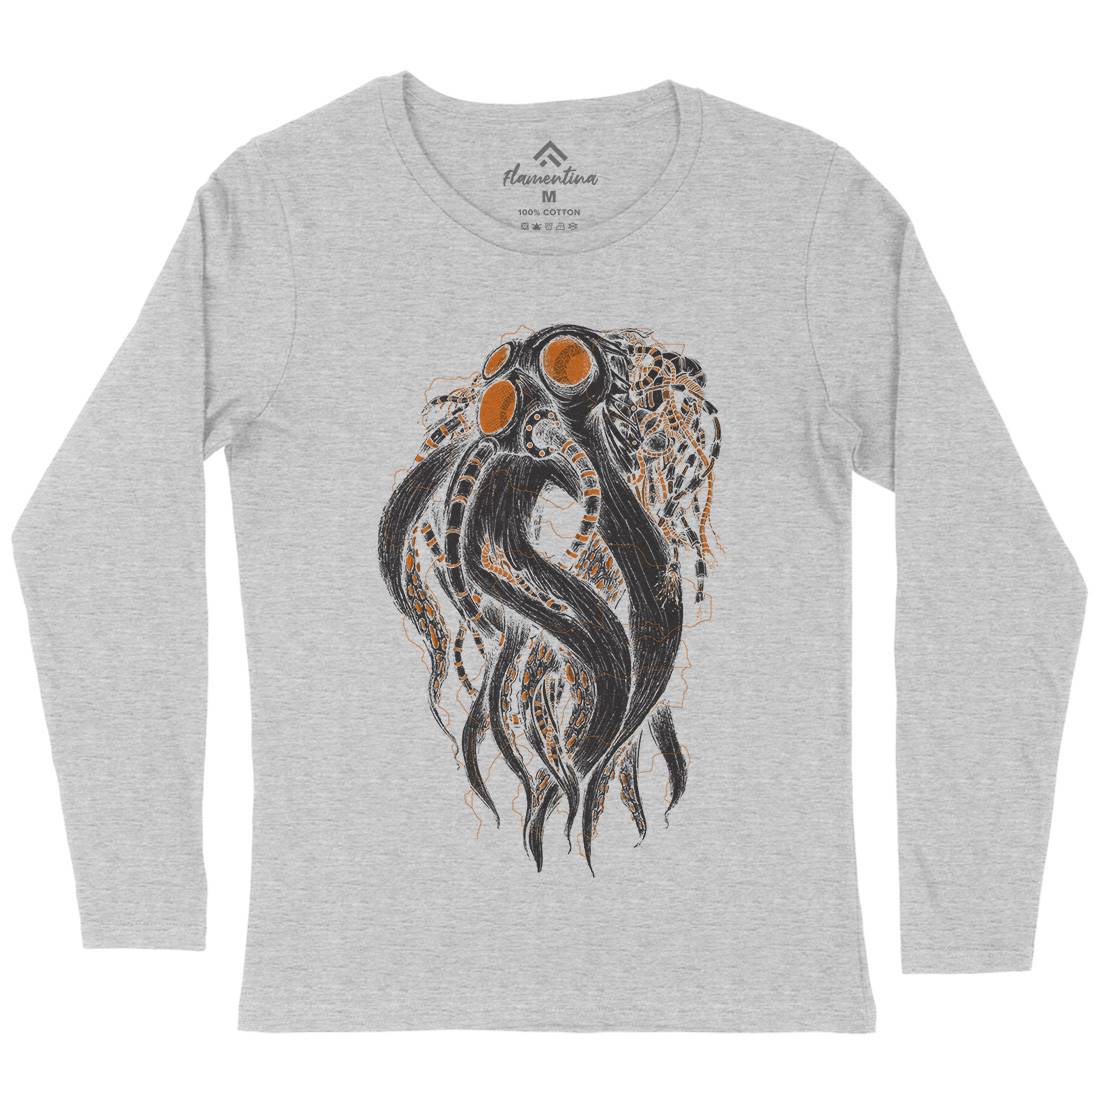 Octopus Robot Womens Long Sleeve T-Shirt Navy D062